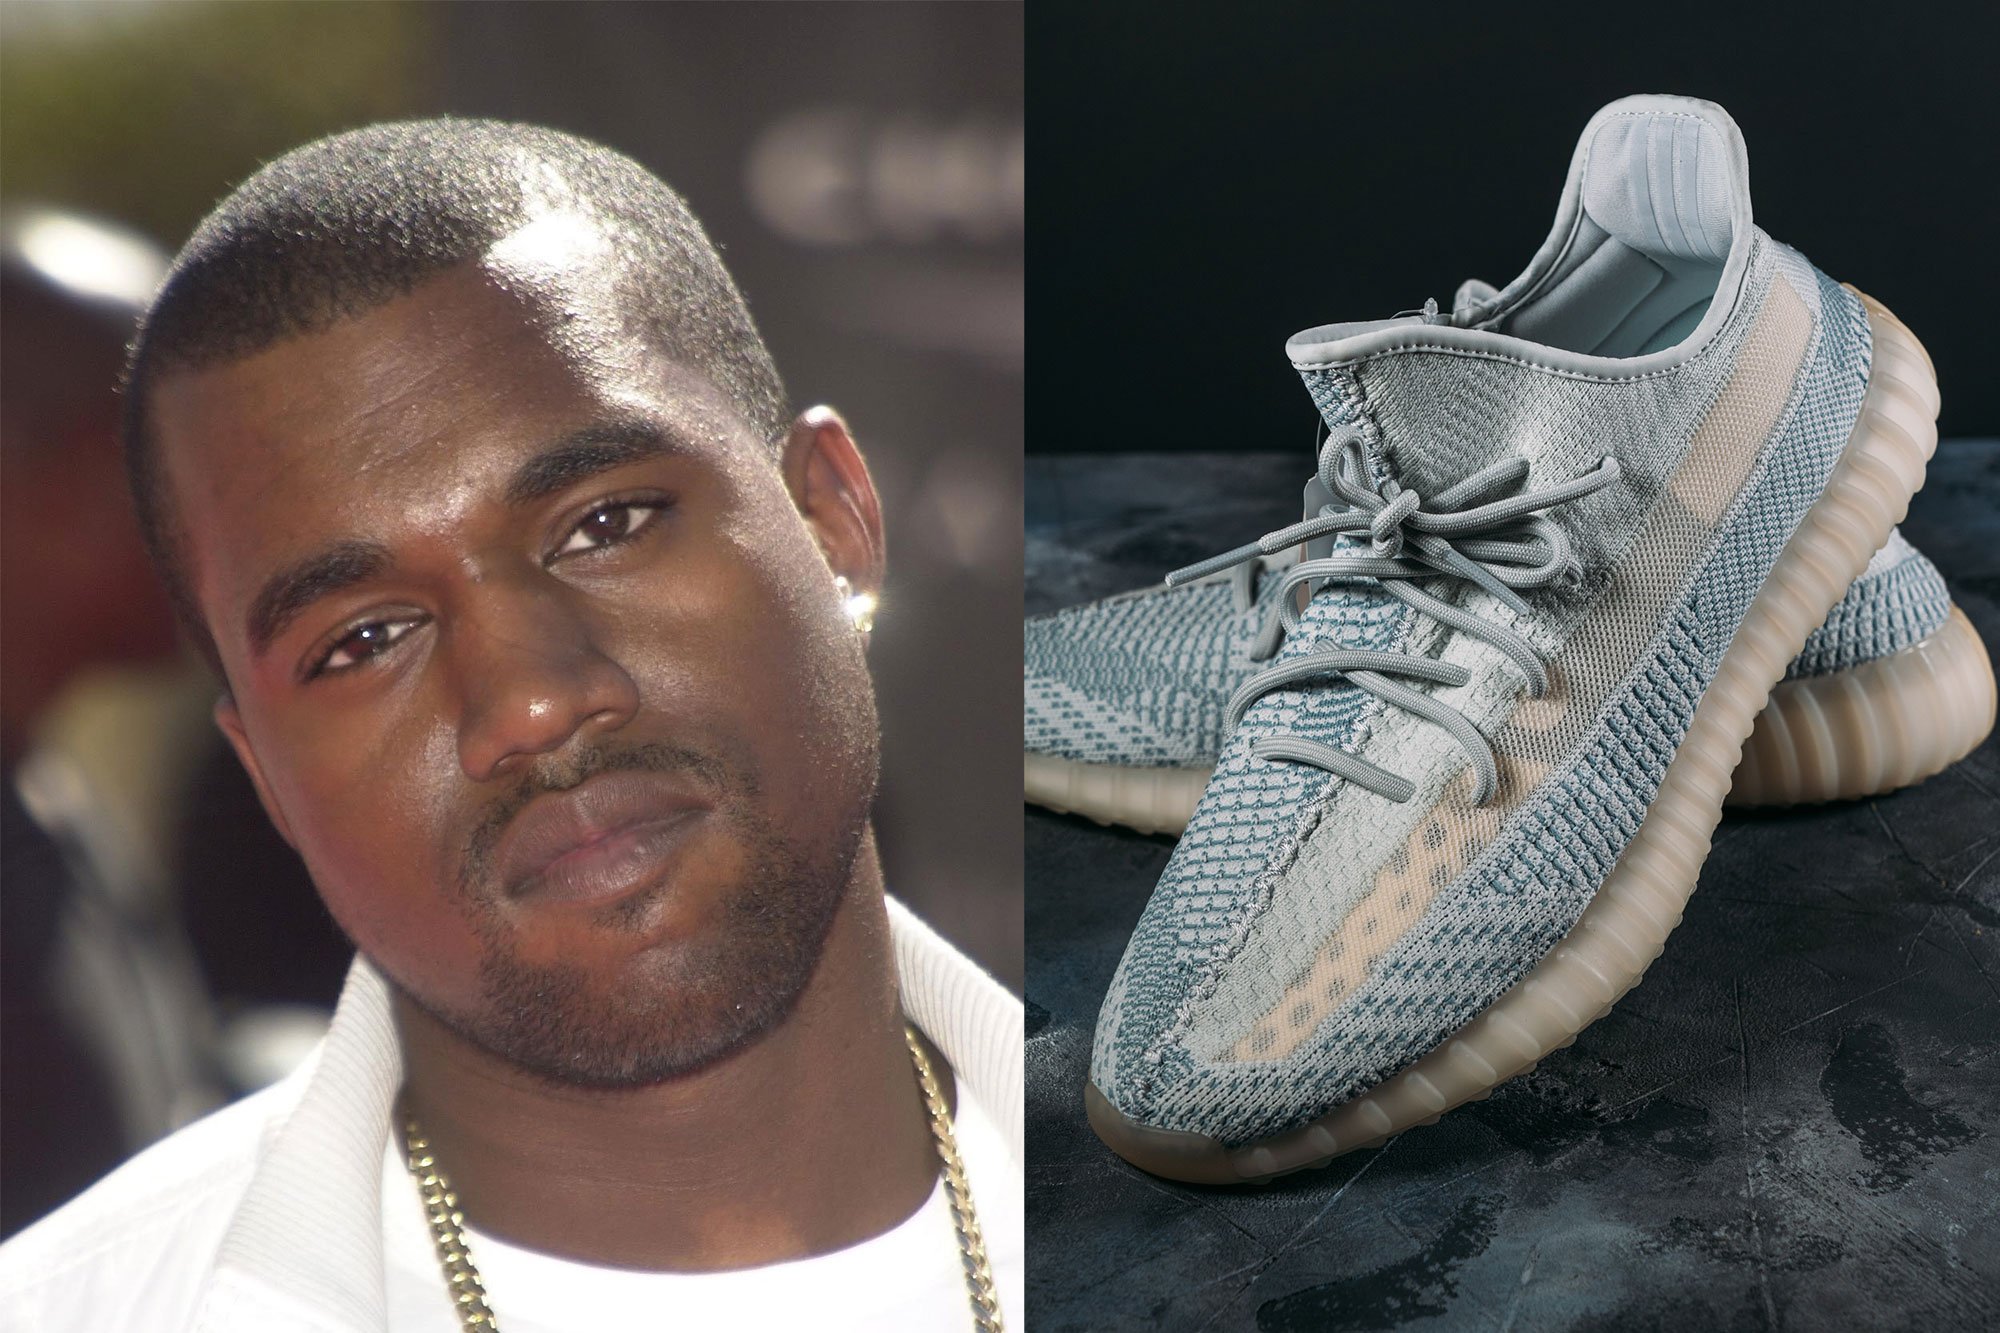 Real Maestro si puedes Adidas sí venderá los tenis Yeezy de Kanye West pese a riesgo de crisis de  imagen - Emprendedor